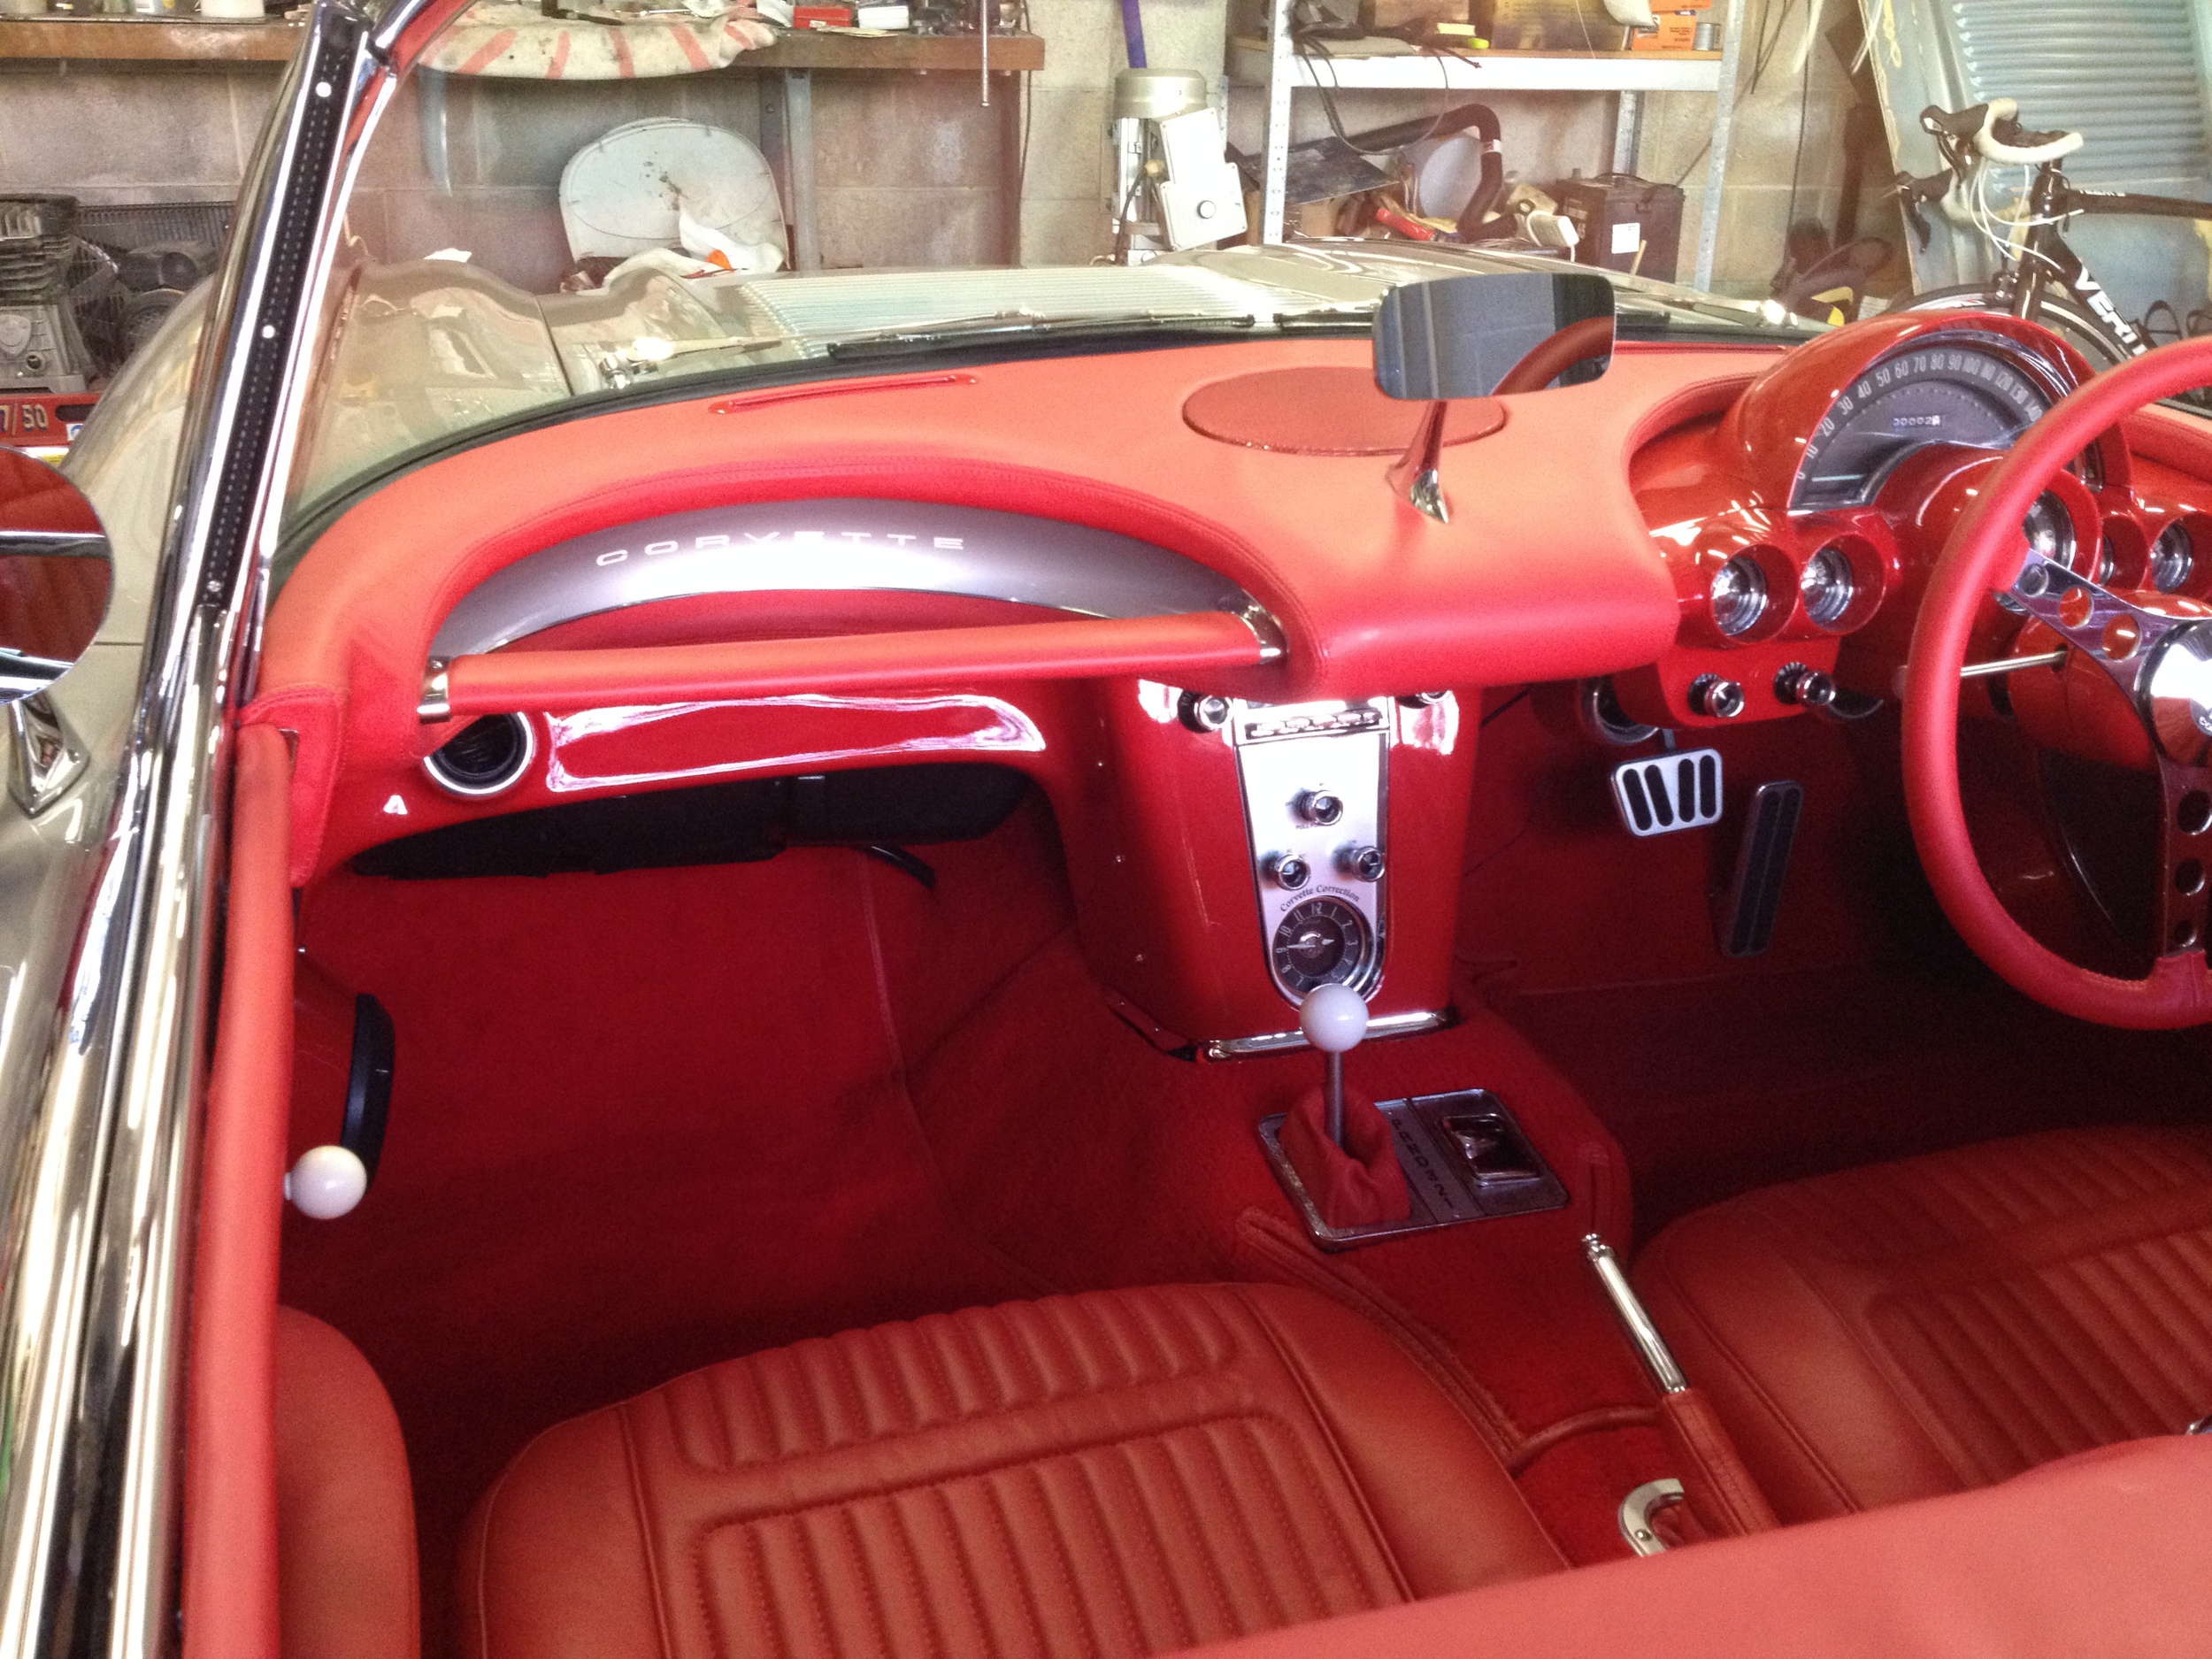 1958 Corvette Dashboard Passenger Side Grab-Bar.